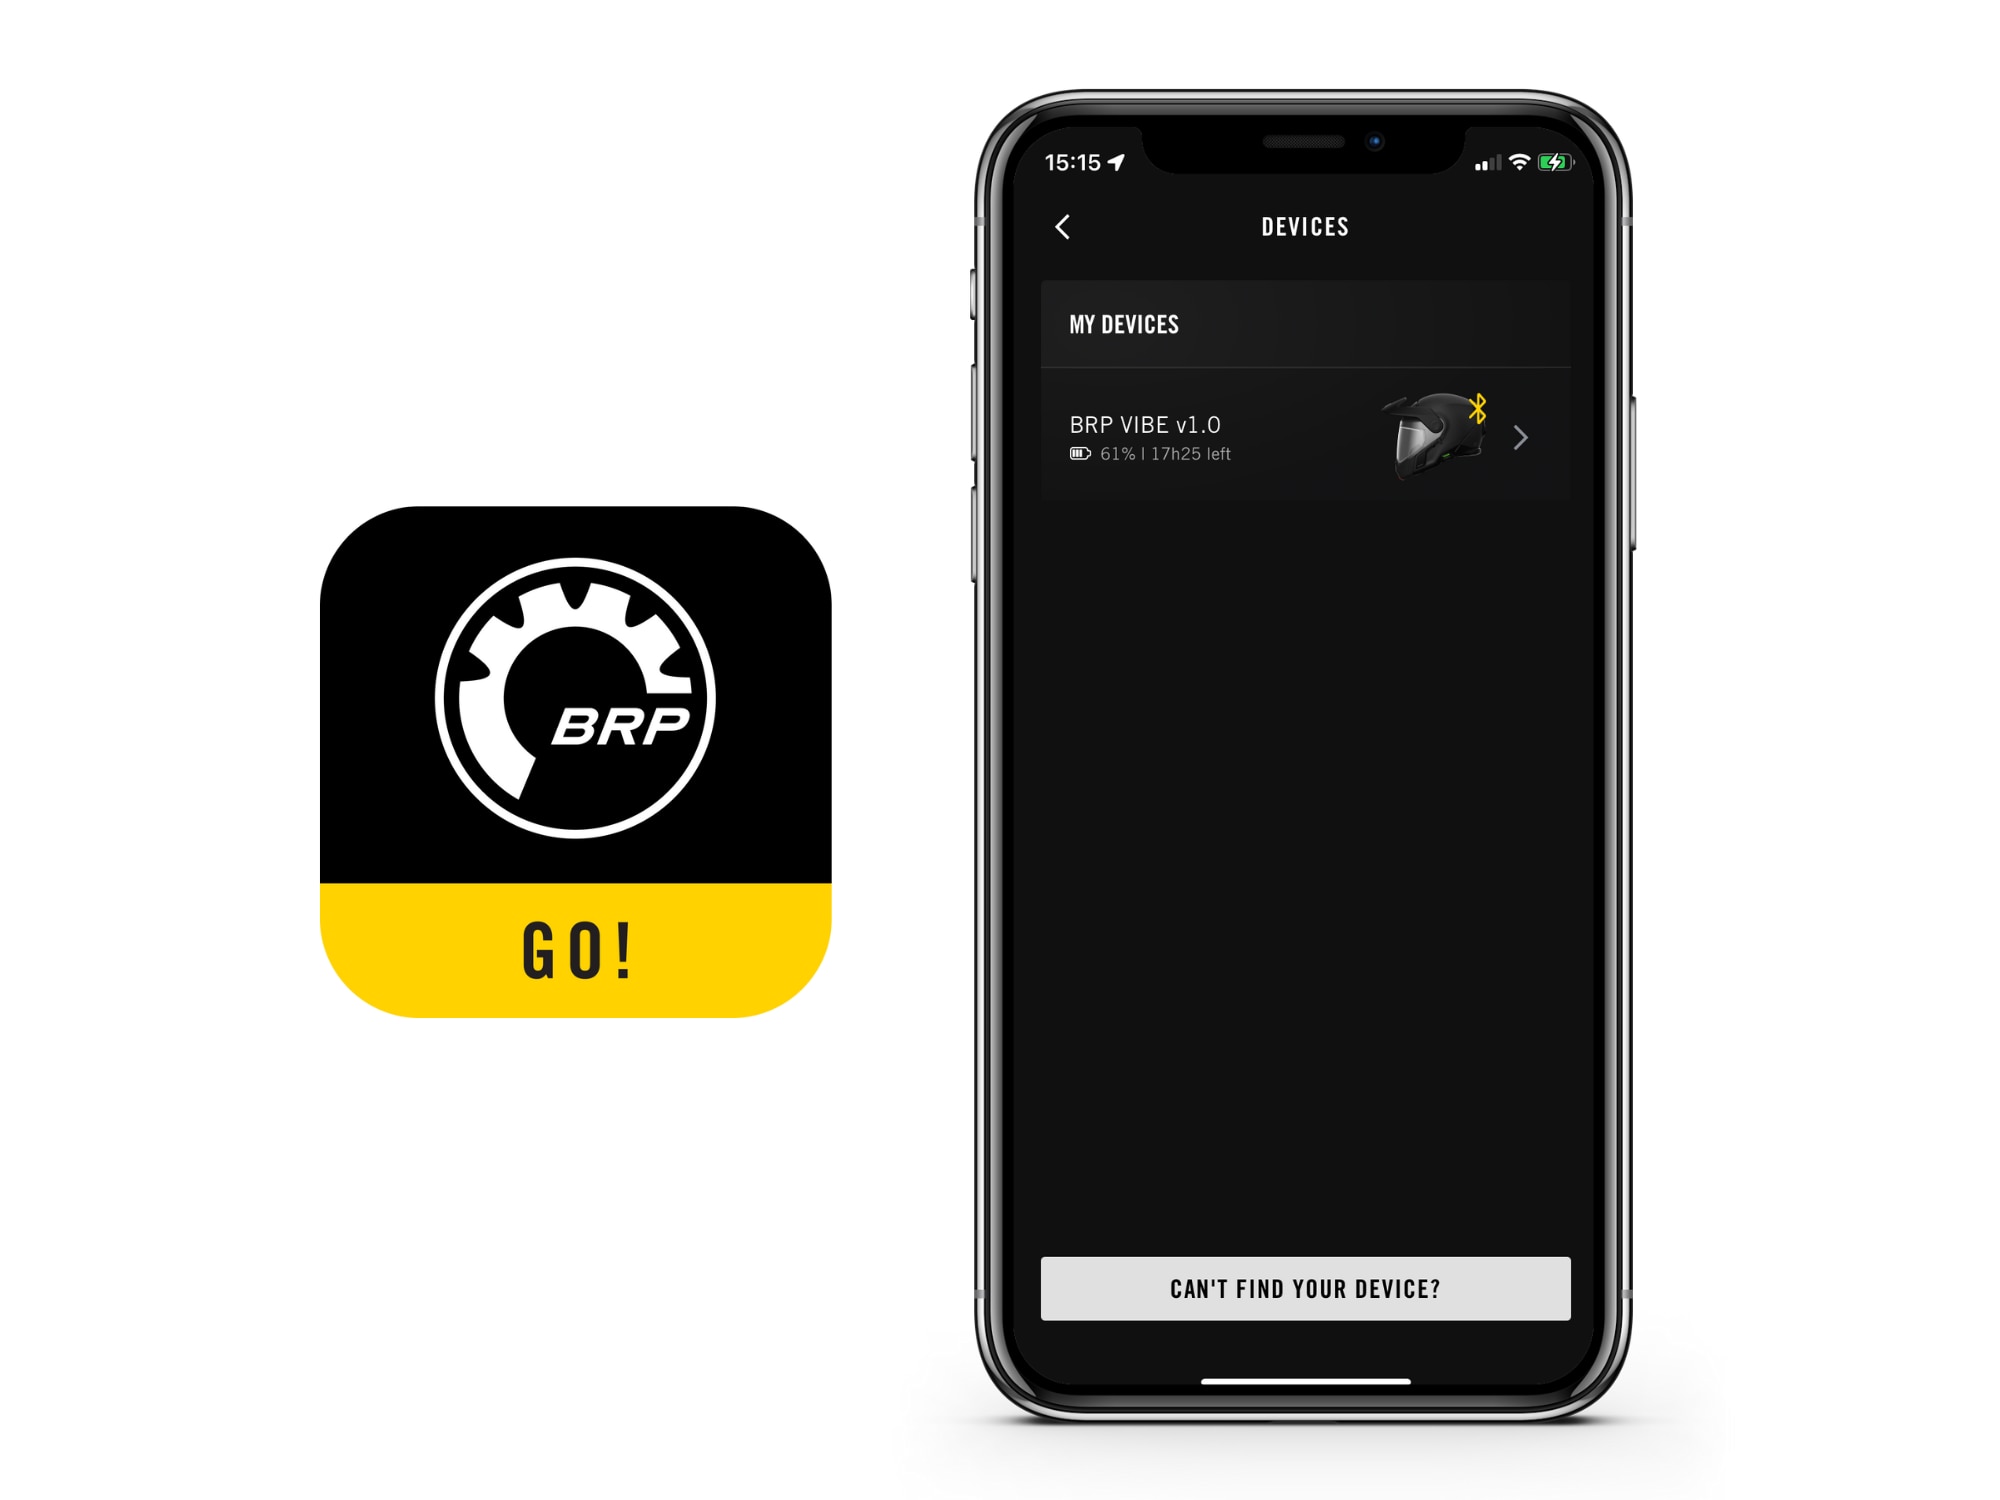 Die BRP GO! App zeigt den Geräte-Bildschirm für das Vibe Kommunikationssystem an